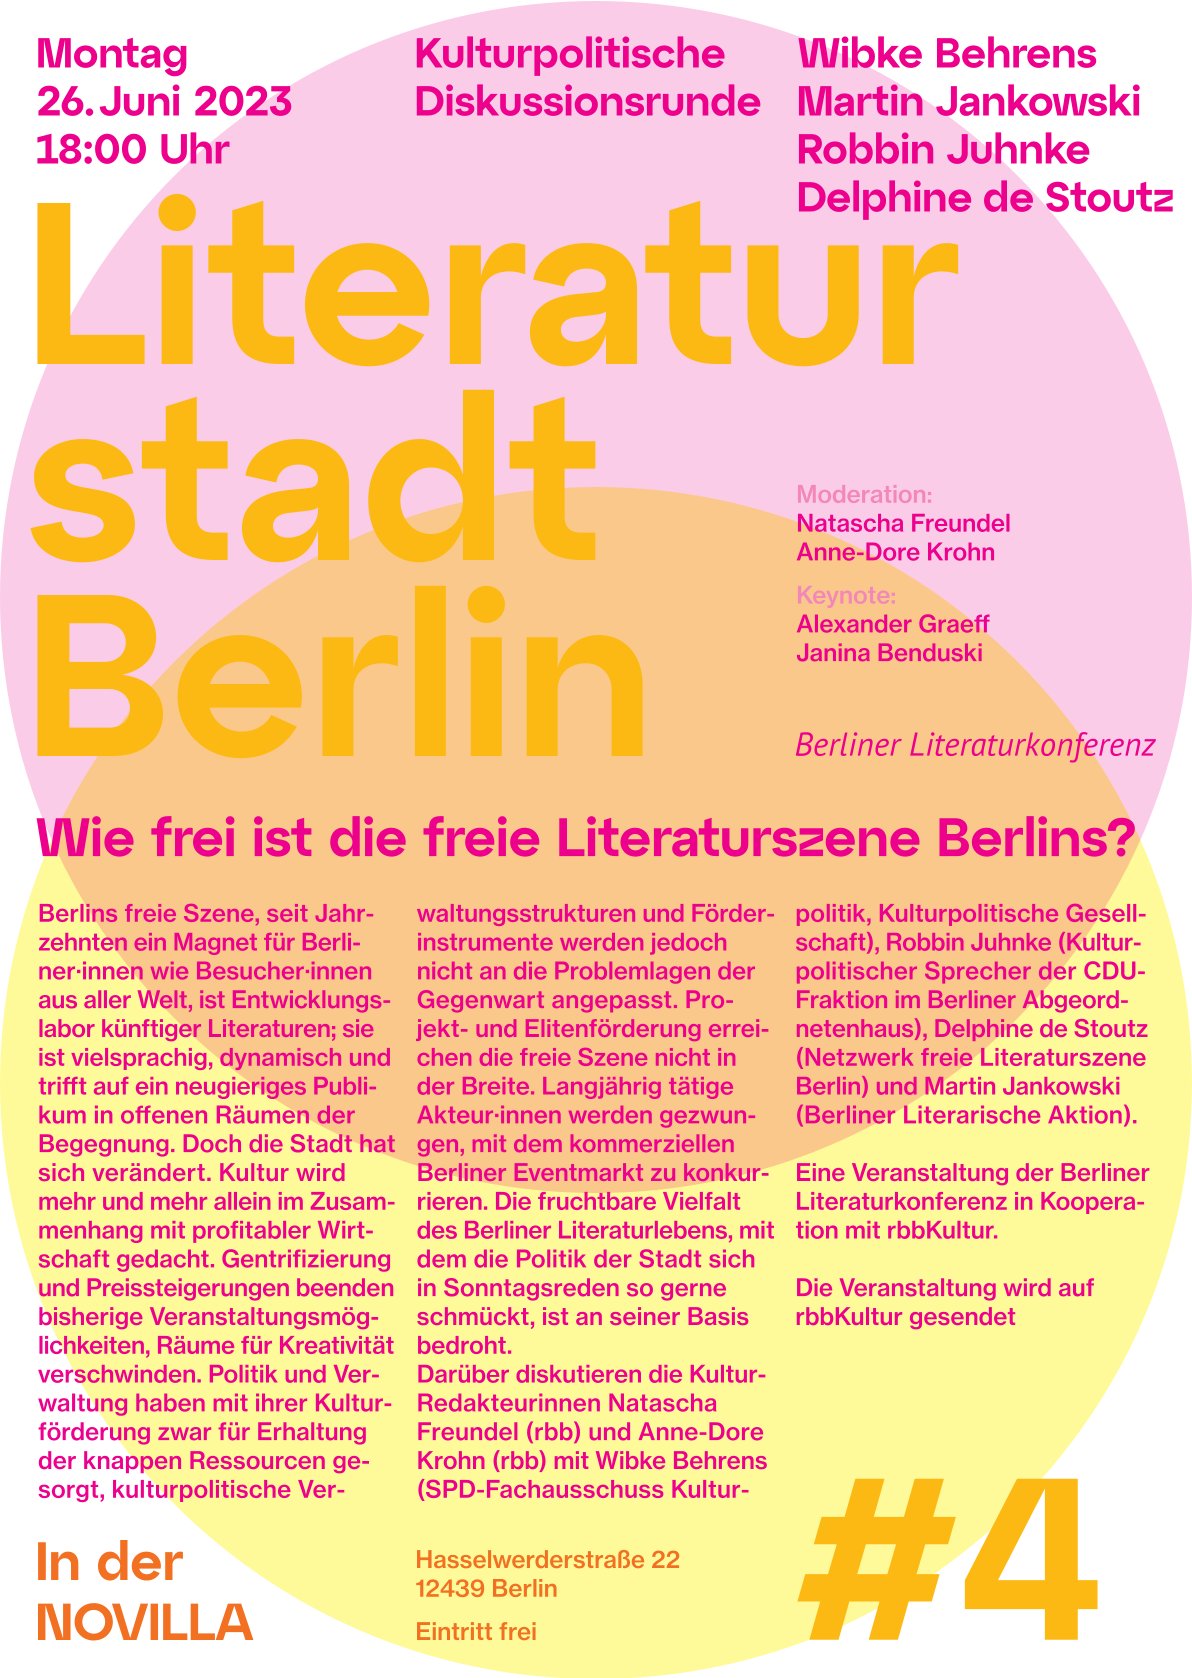 Wie frei ist die Literaturszene Berlins?